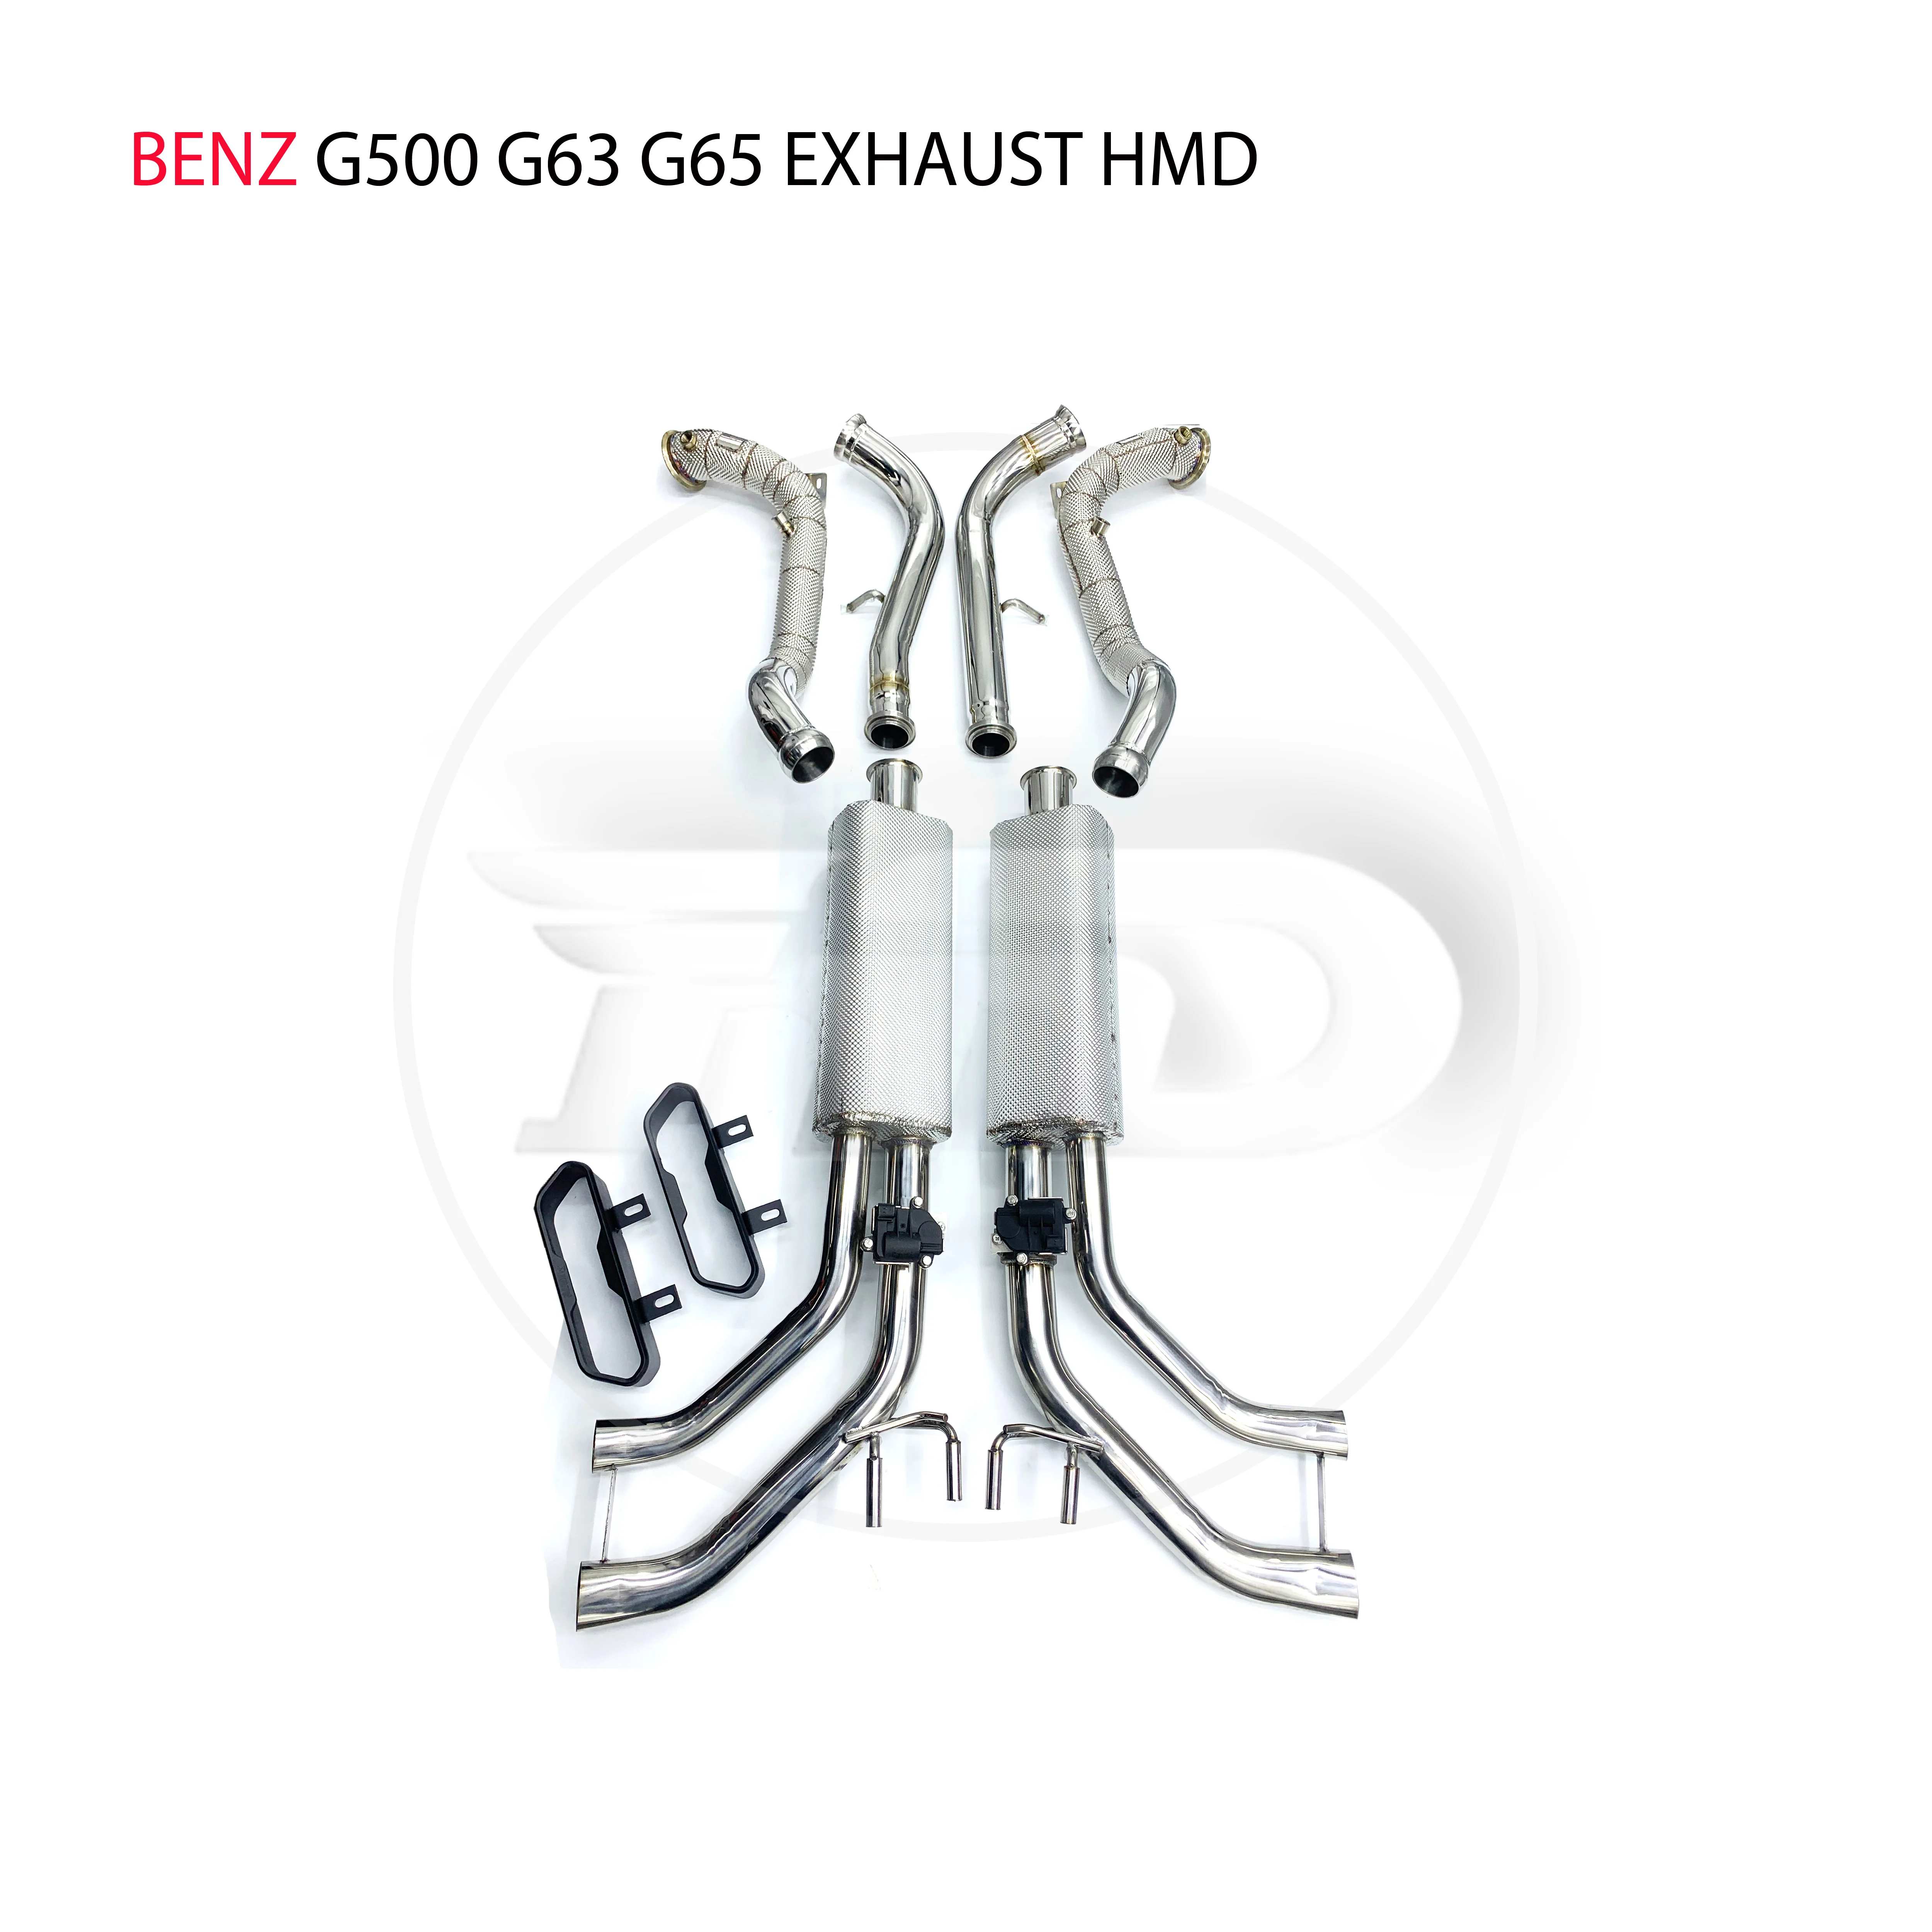 Выпускная система HMD из нержавеющей стали, водосточная труба и задняя крышка, подходит для модификации Benz G500 G63 G65, электронный клапан